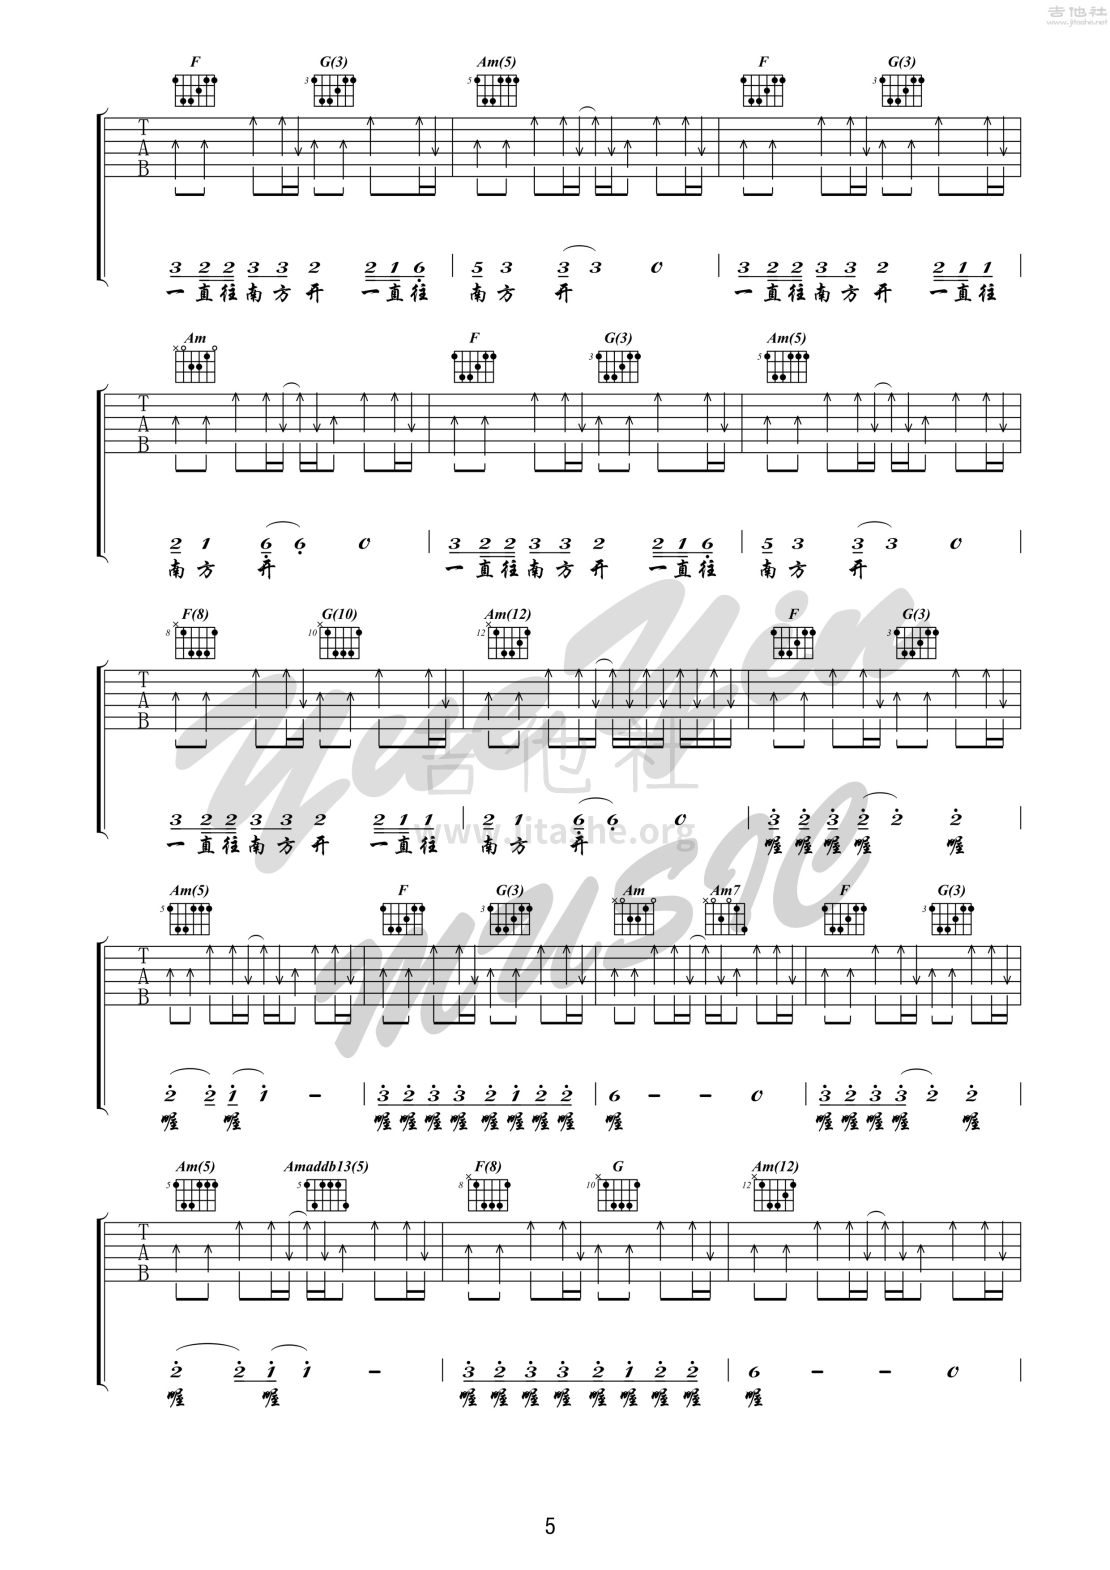 公路之歌 吉他 （悦音之声音乐工作室吉他教学系列 痛仰乐队系列 I ）吉他谱(图片谱,弹唱,公路之歌)_痛苦的信仰(痛仰)_公路之歌 5.jpg